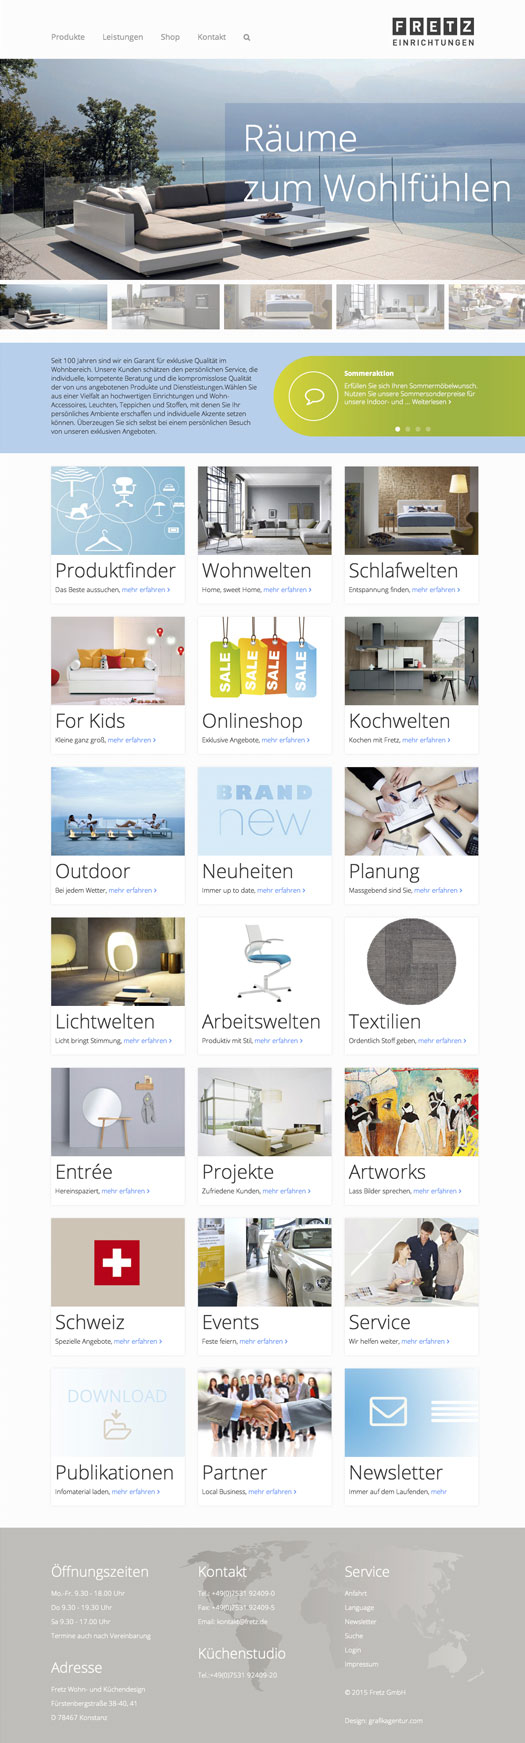 Home Fretz Wohn und Kuechendesign 201506221 Fretz – Neue Website